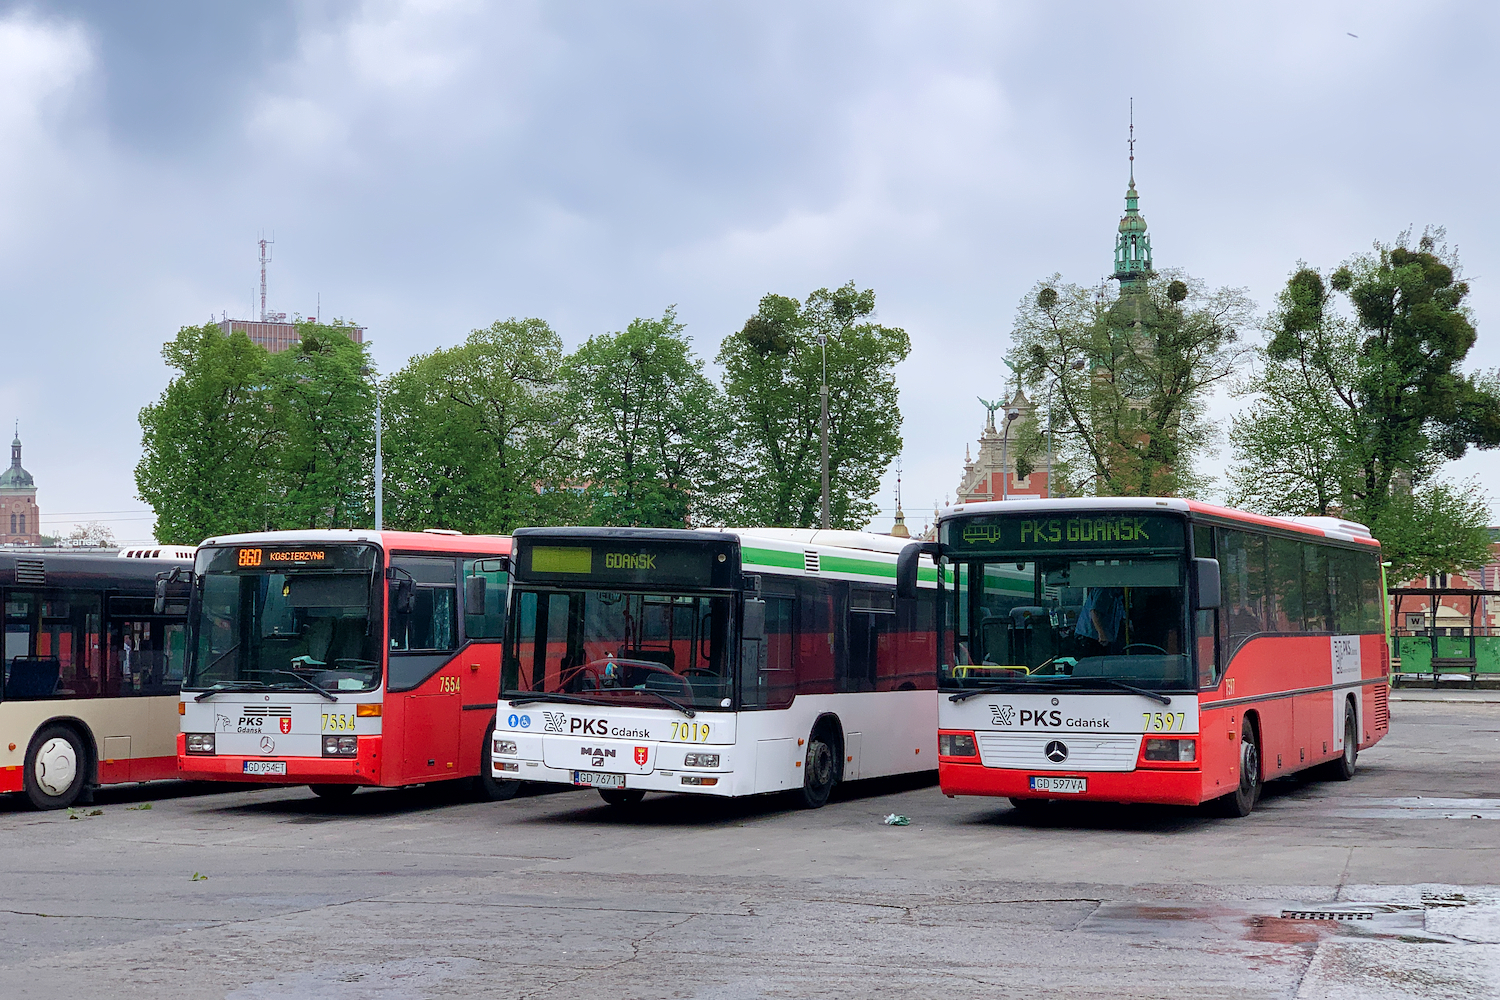 Gdańsk, Mercedes-Benz O408 №: 7554; Gdańsk, MAN A21 NL263 №: 7019; Gdańsk, Mercedes-Benz O550 Integro №: 7597